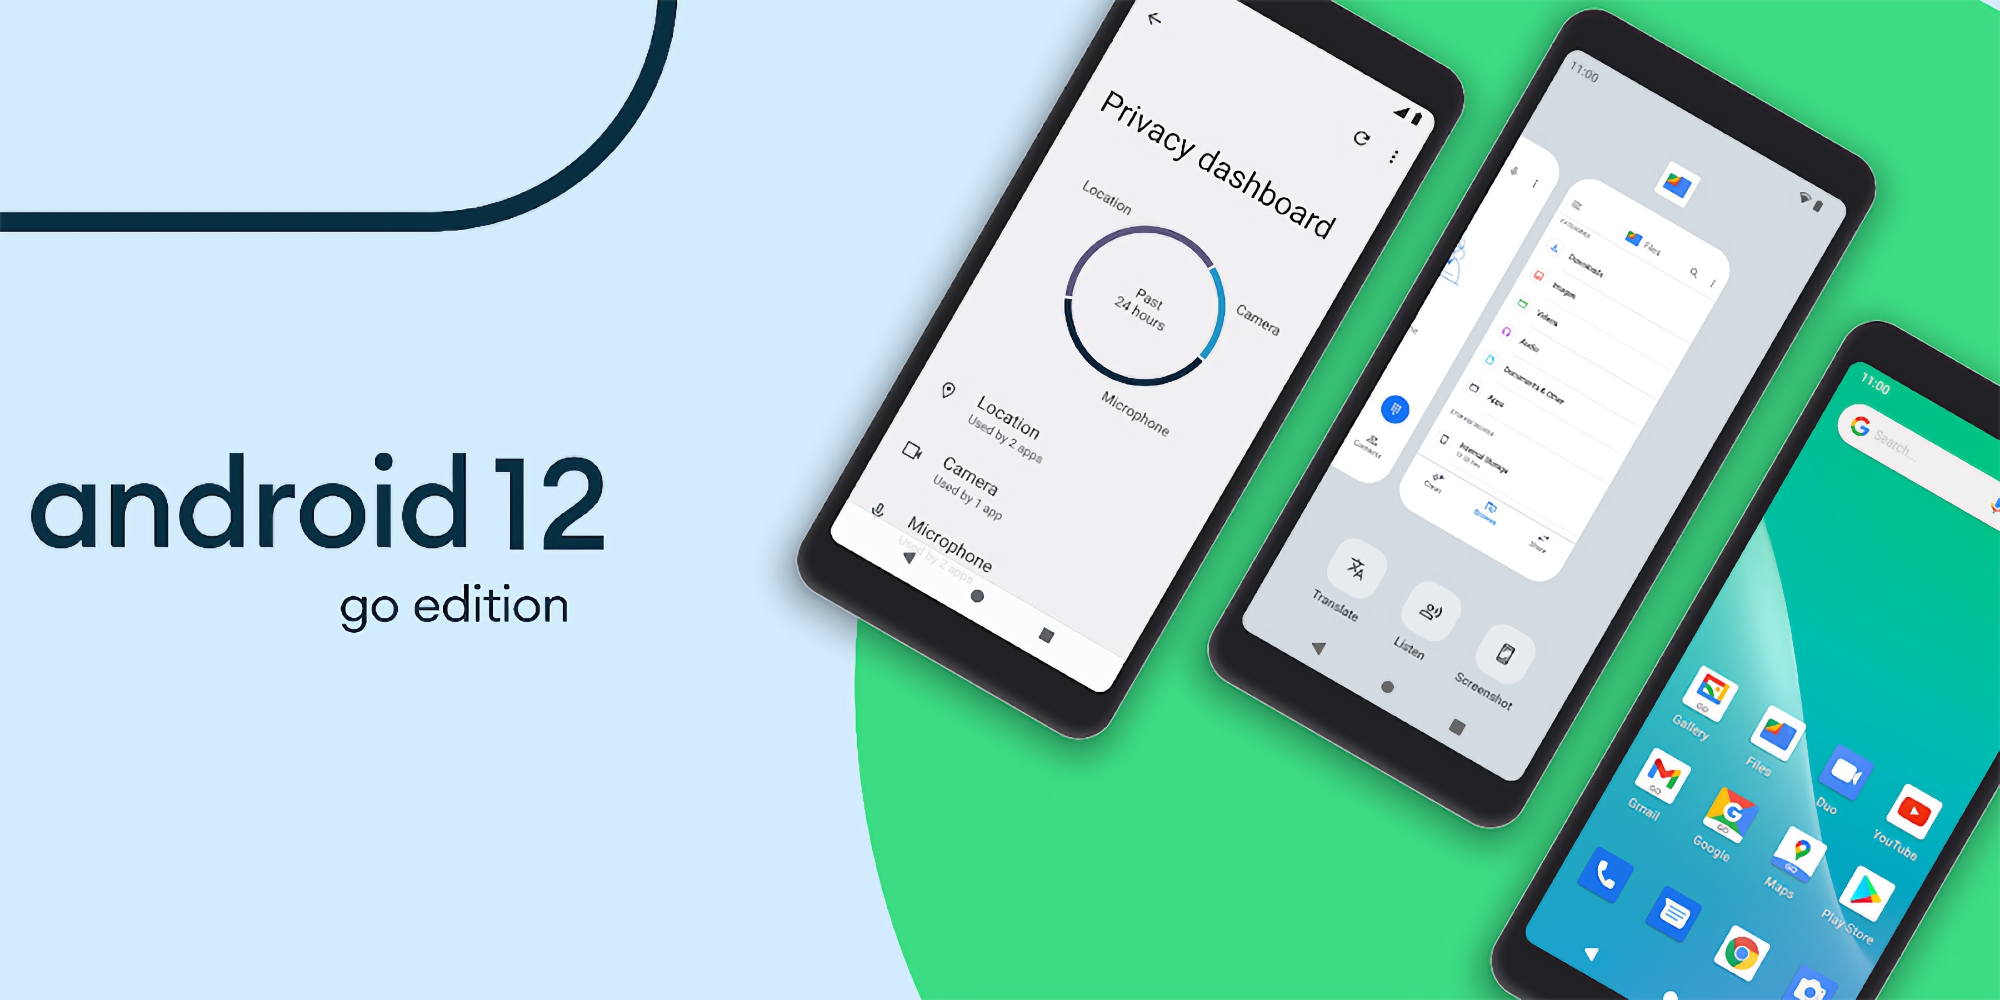 Google a présenté Android 12 (Go Edition) : une nouvelle version simplifiée de l'OS Android